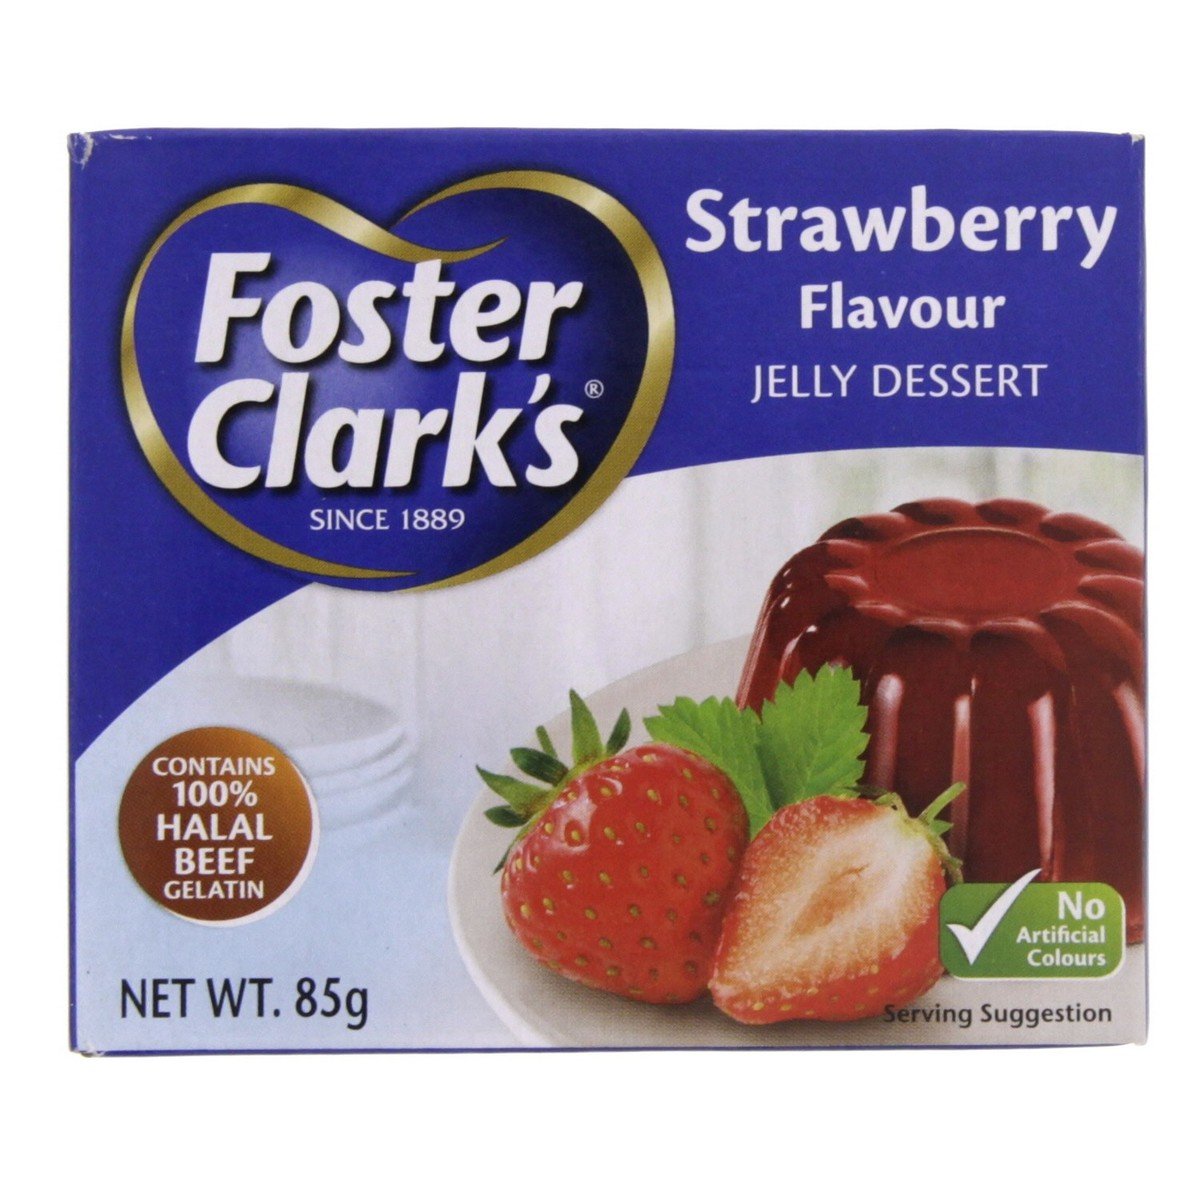 Foster Clark's Jelly Dessert Strawberry Flavour 85g